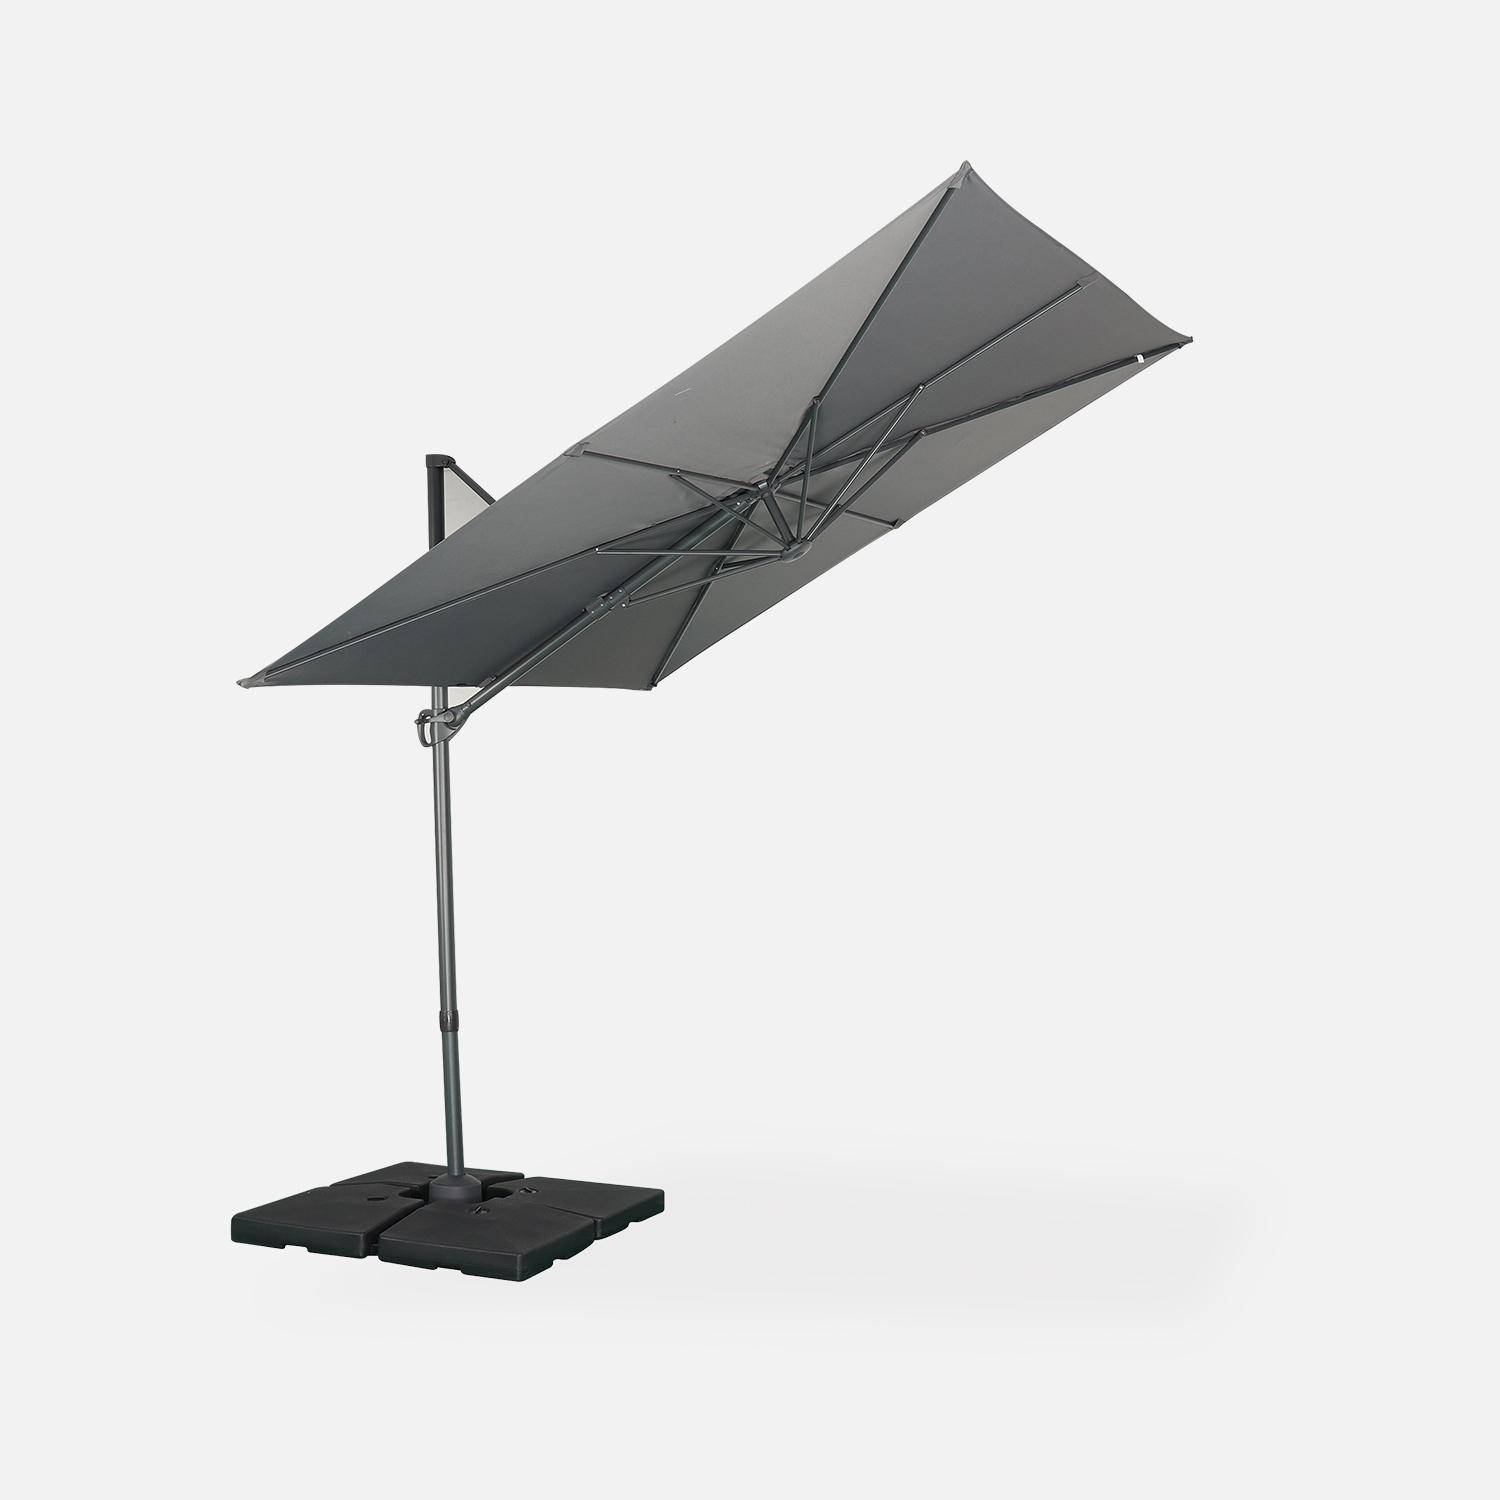 Parasol déporté carré 250 x 250 cm – Andernos – gris – parasol exporté, inclinable, rabattable et rotatif à 360° Photo3